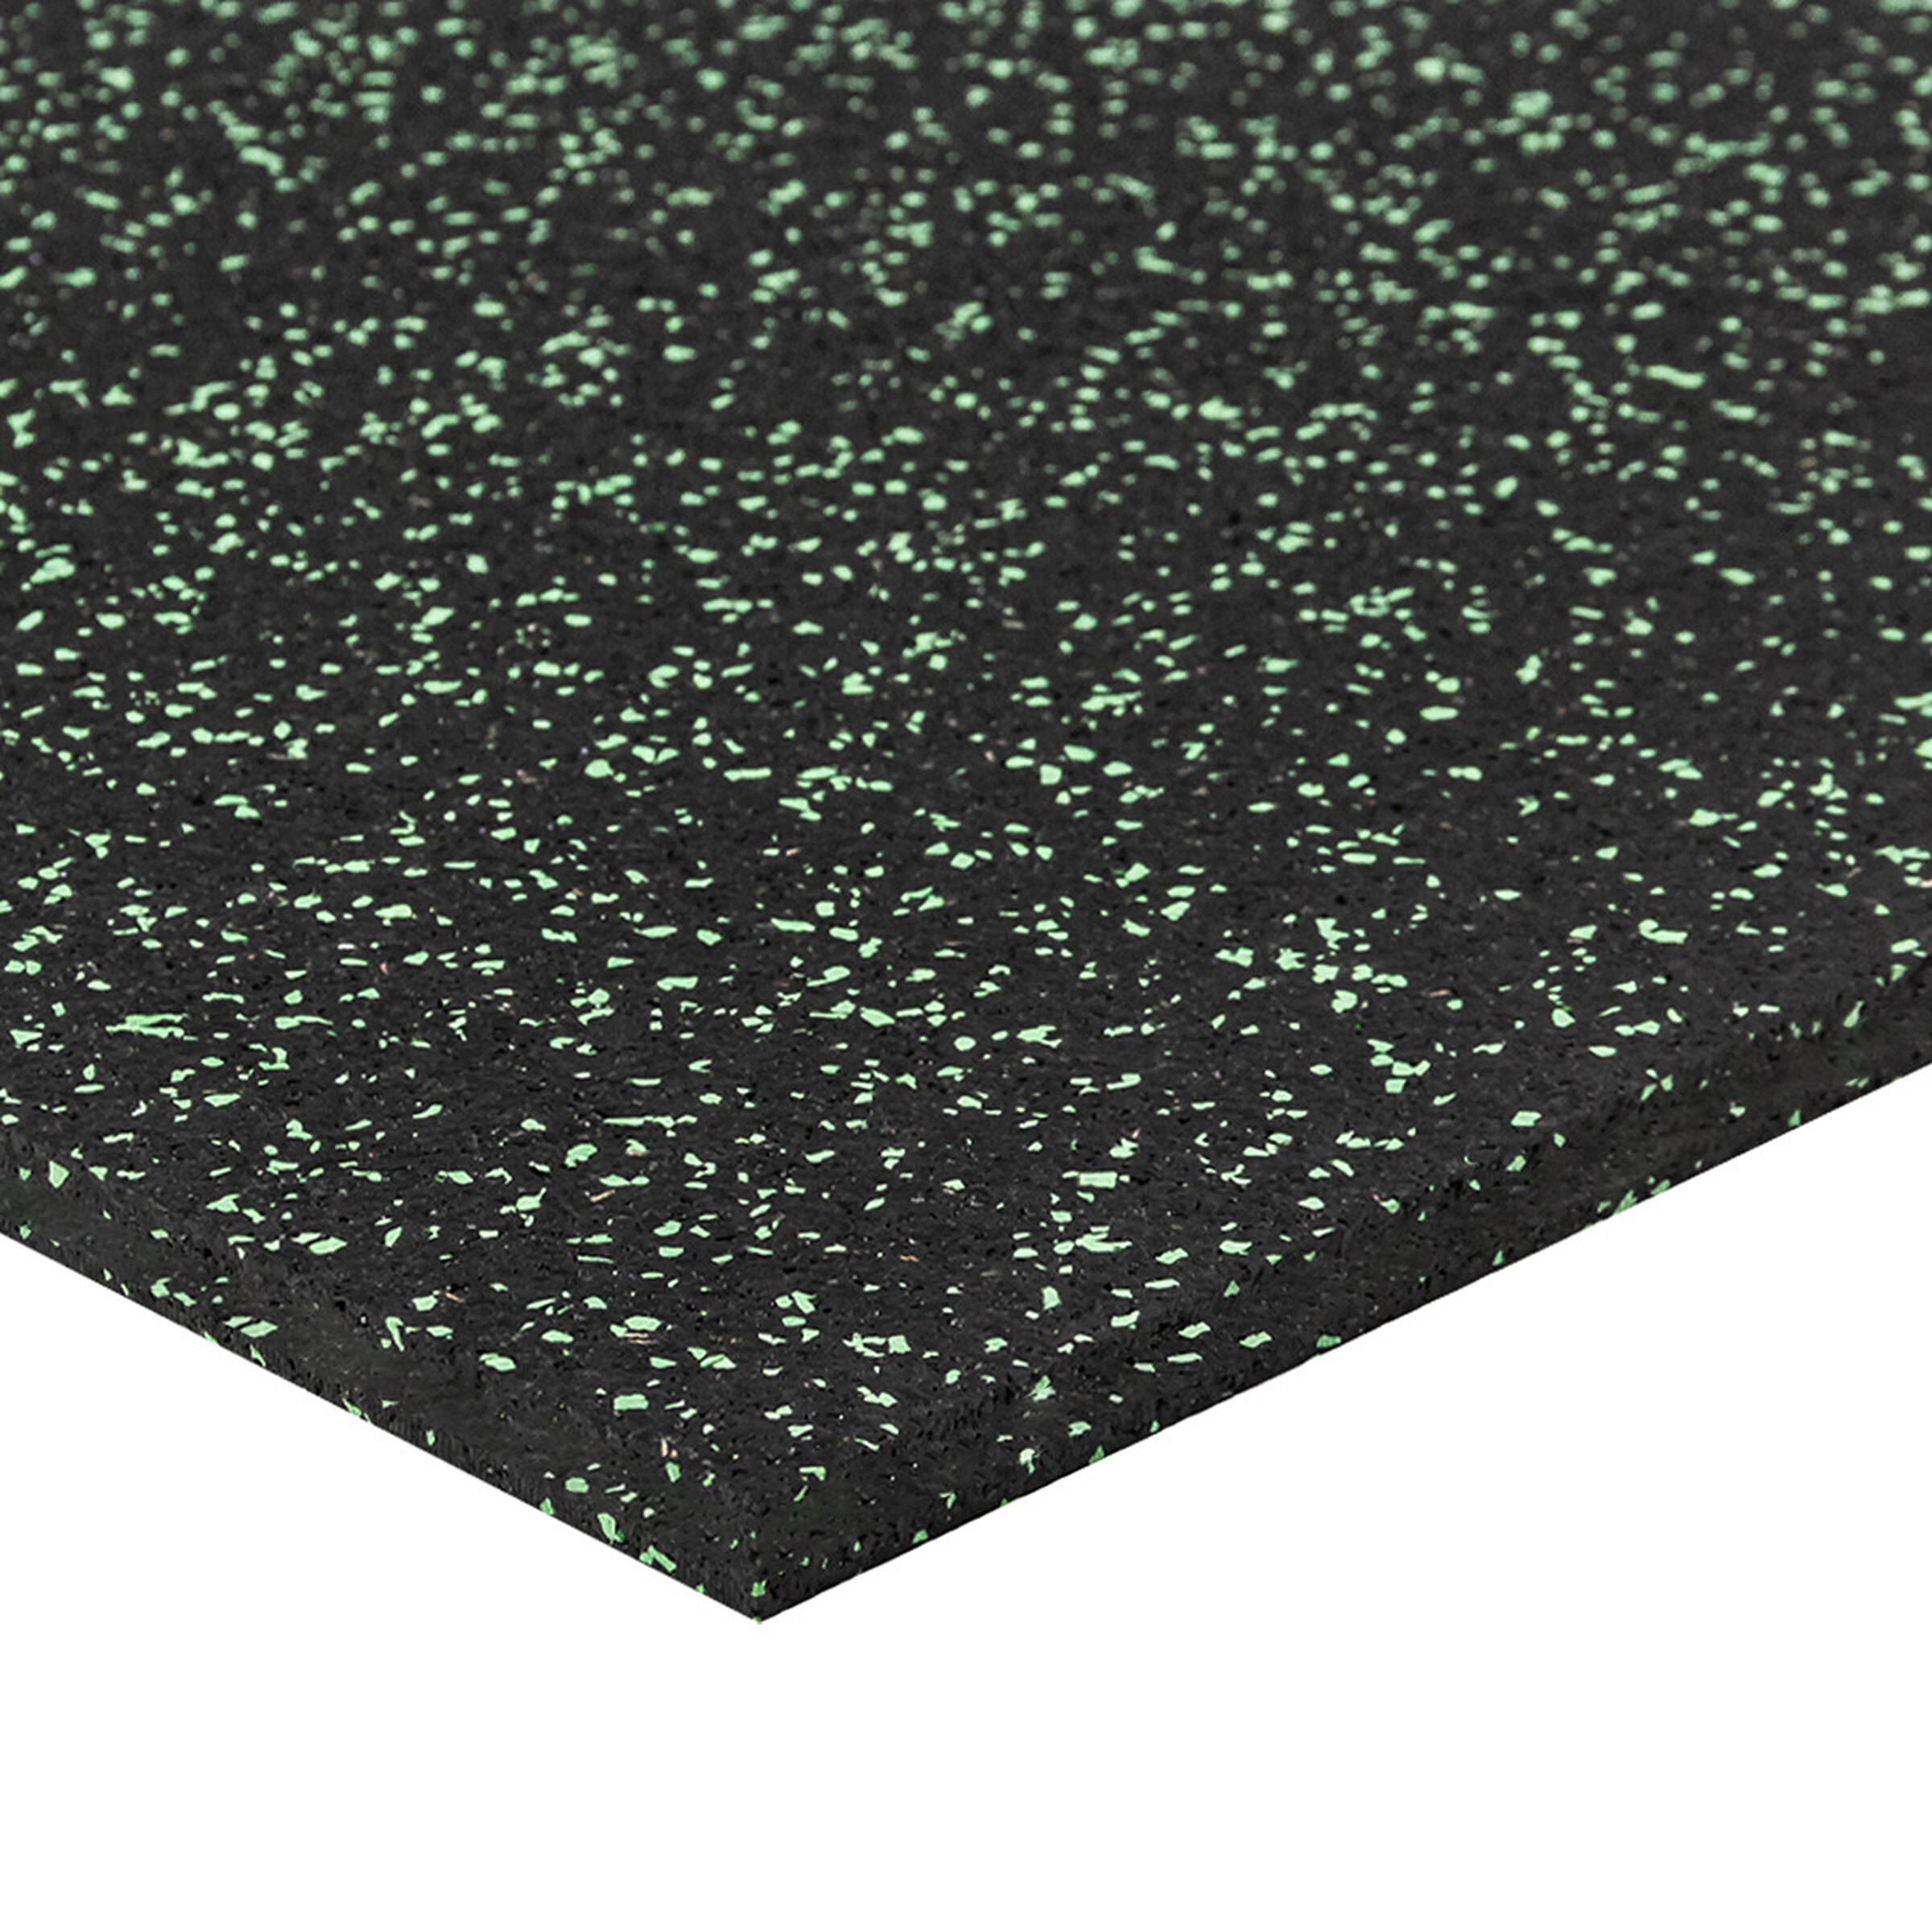 Čierno-zelená gumová modulová puzzle dlažba (stred) FLOMA FitFlo SF1050 - dĺžka 50 cm, šírka 50 cm, výška 1,6 cm